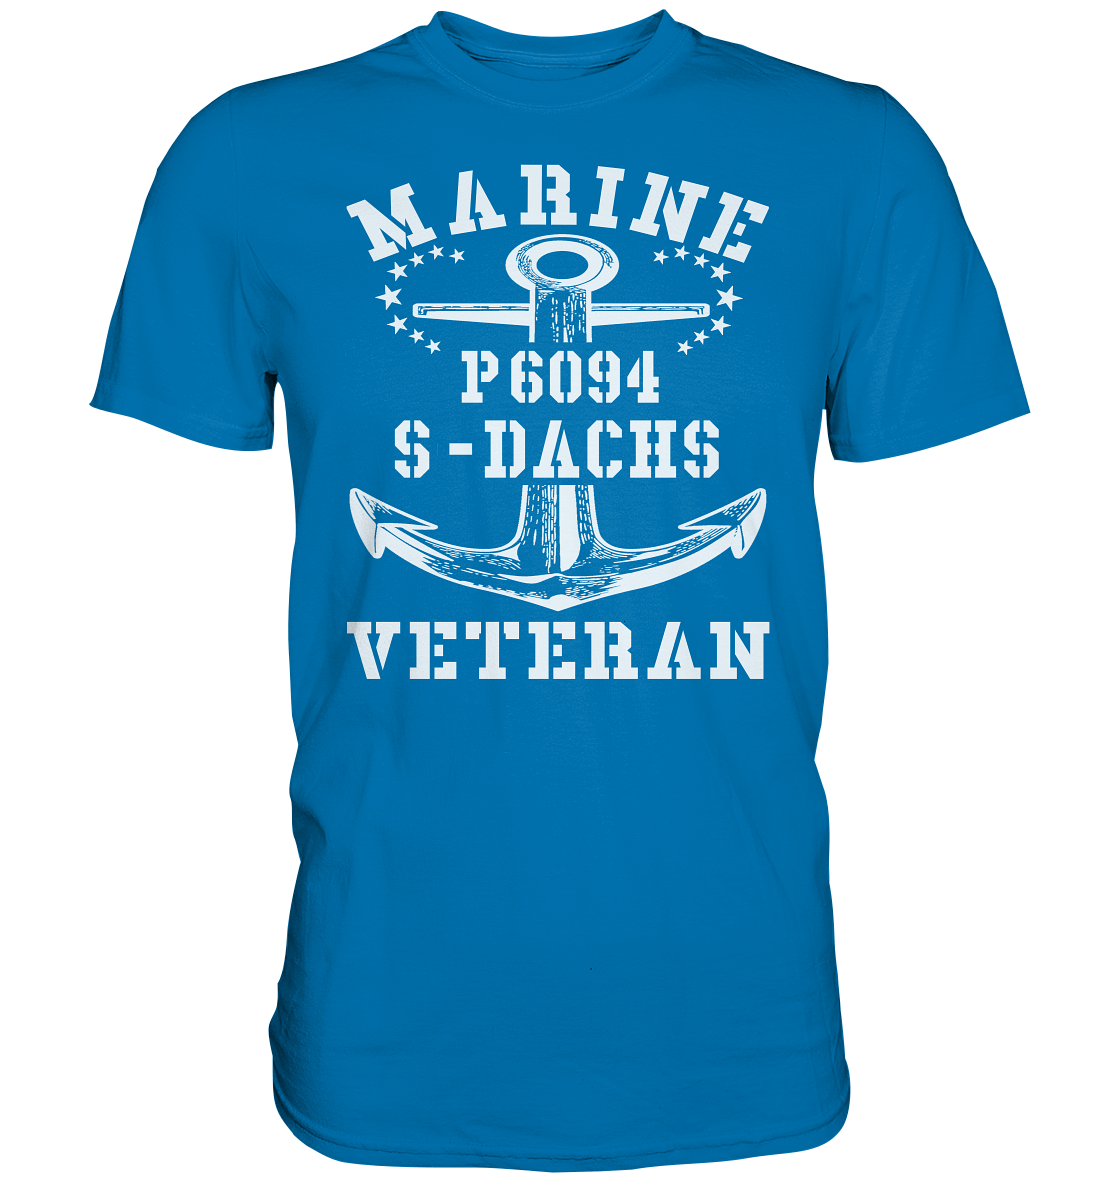 P6094 S-DACHS Marine Veteran - Premium Shirt